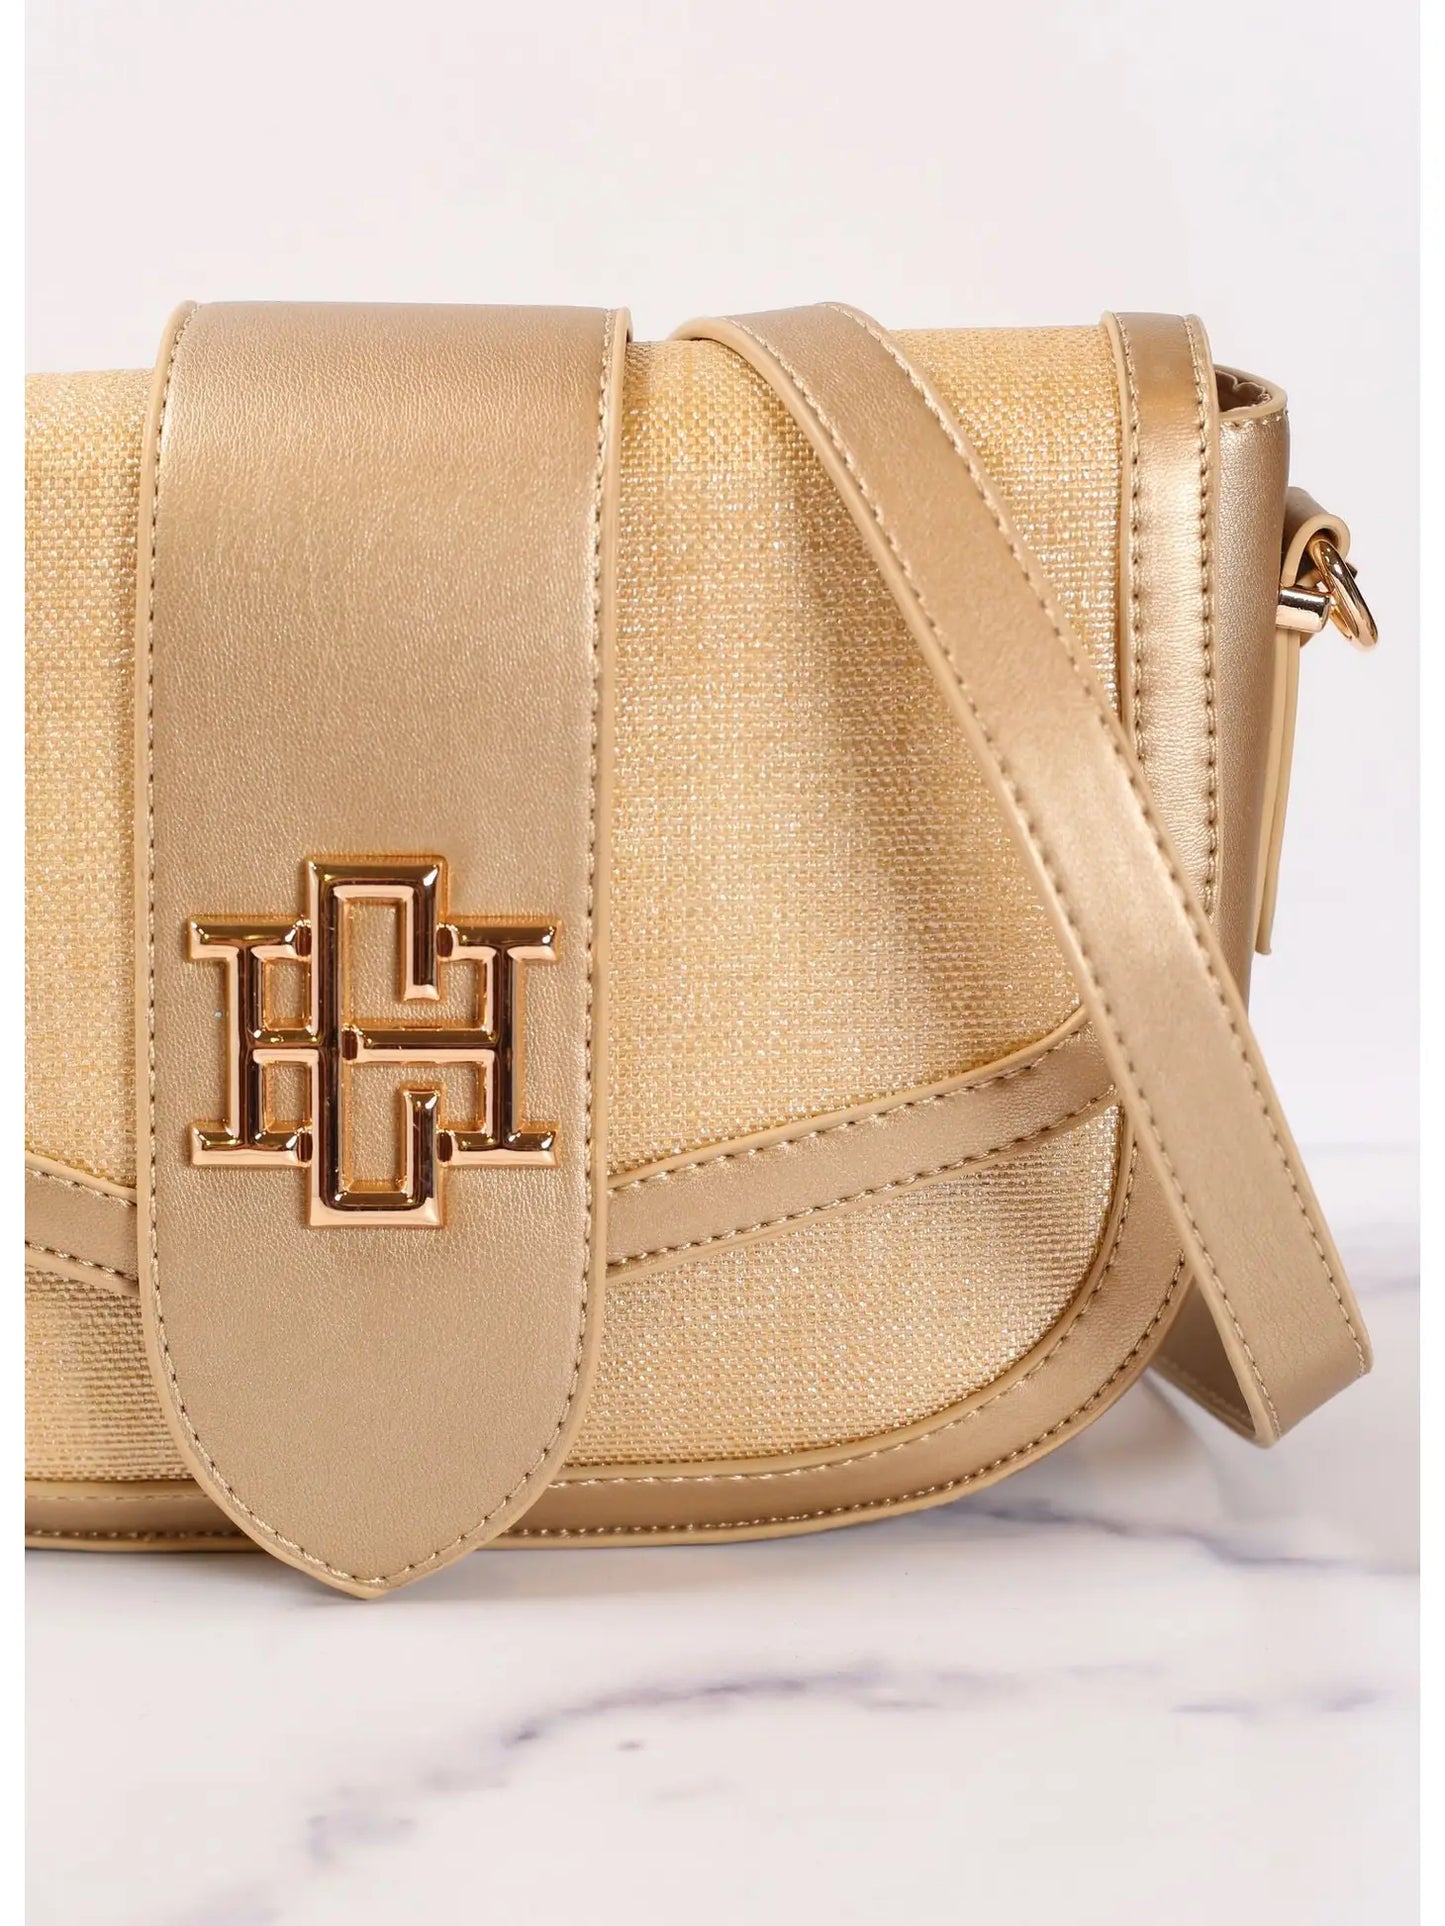 CAROLINE HILL Griffin Crossbody Bag - gold straw